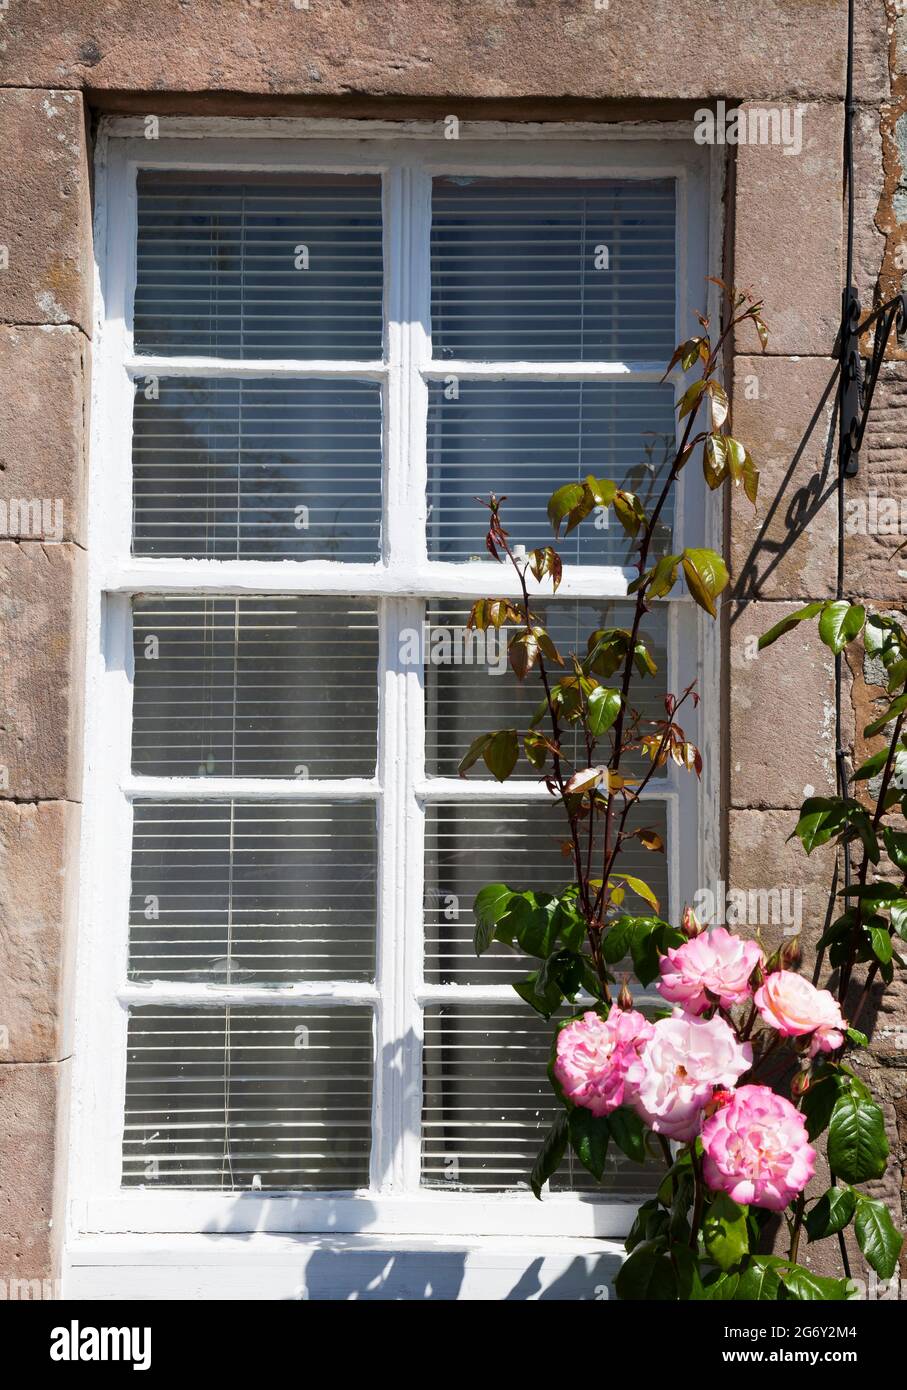 Cornice finestra in legno verniciato bianco con rose rosa. Foto Stock